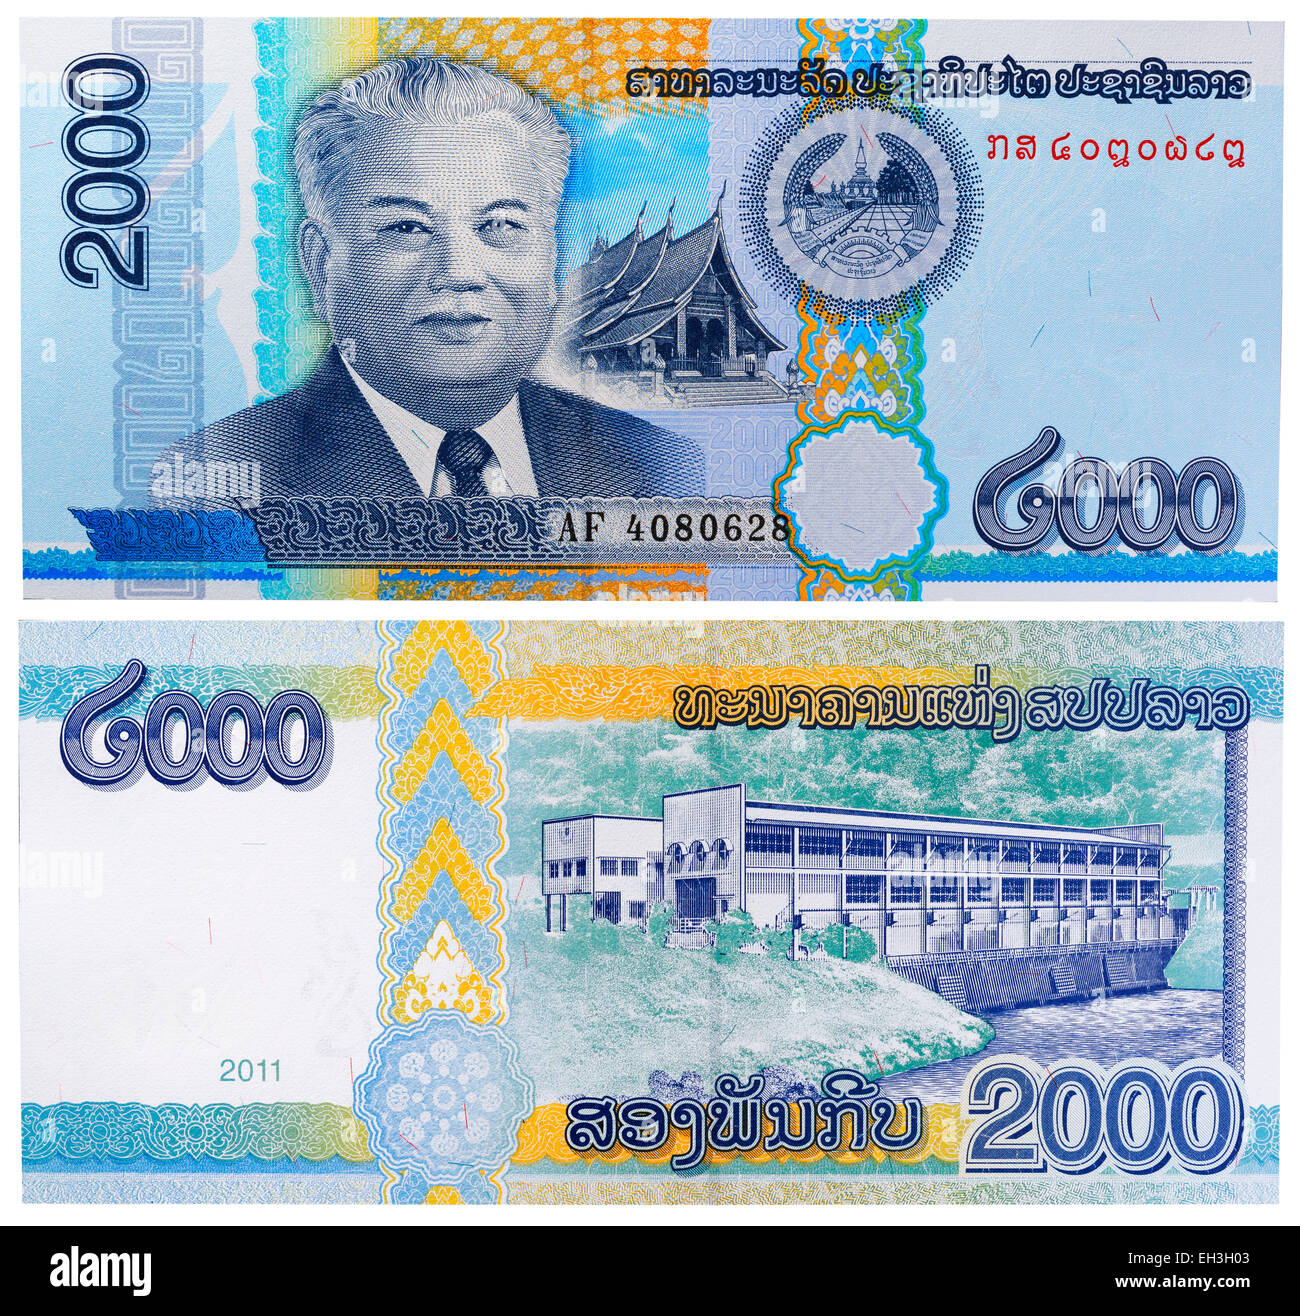 2000 kip banconota, Presidente Kaysone Phomvihane, Laos, 2011 Foto Stock